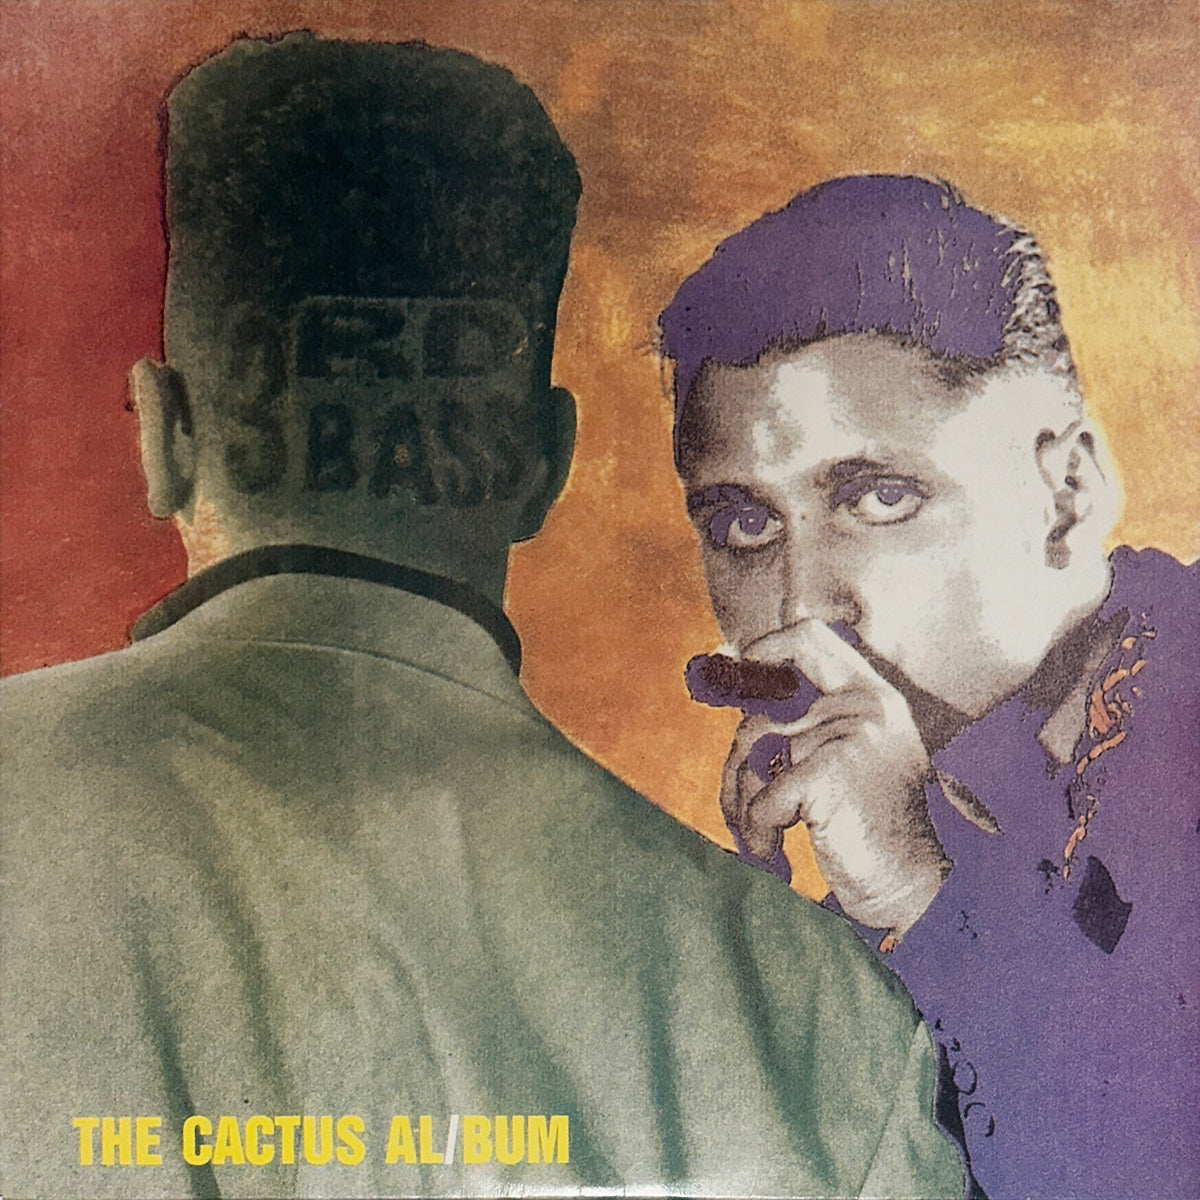 The Cactus Al/Bum (The Cactus Album)